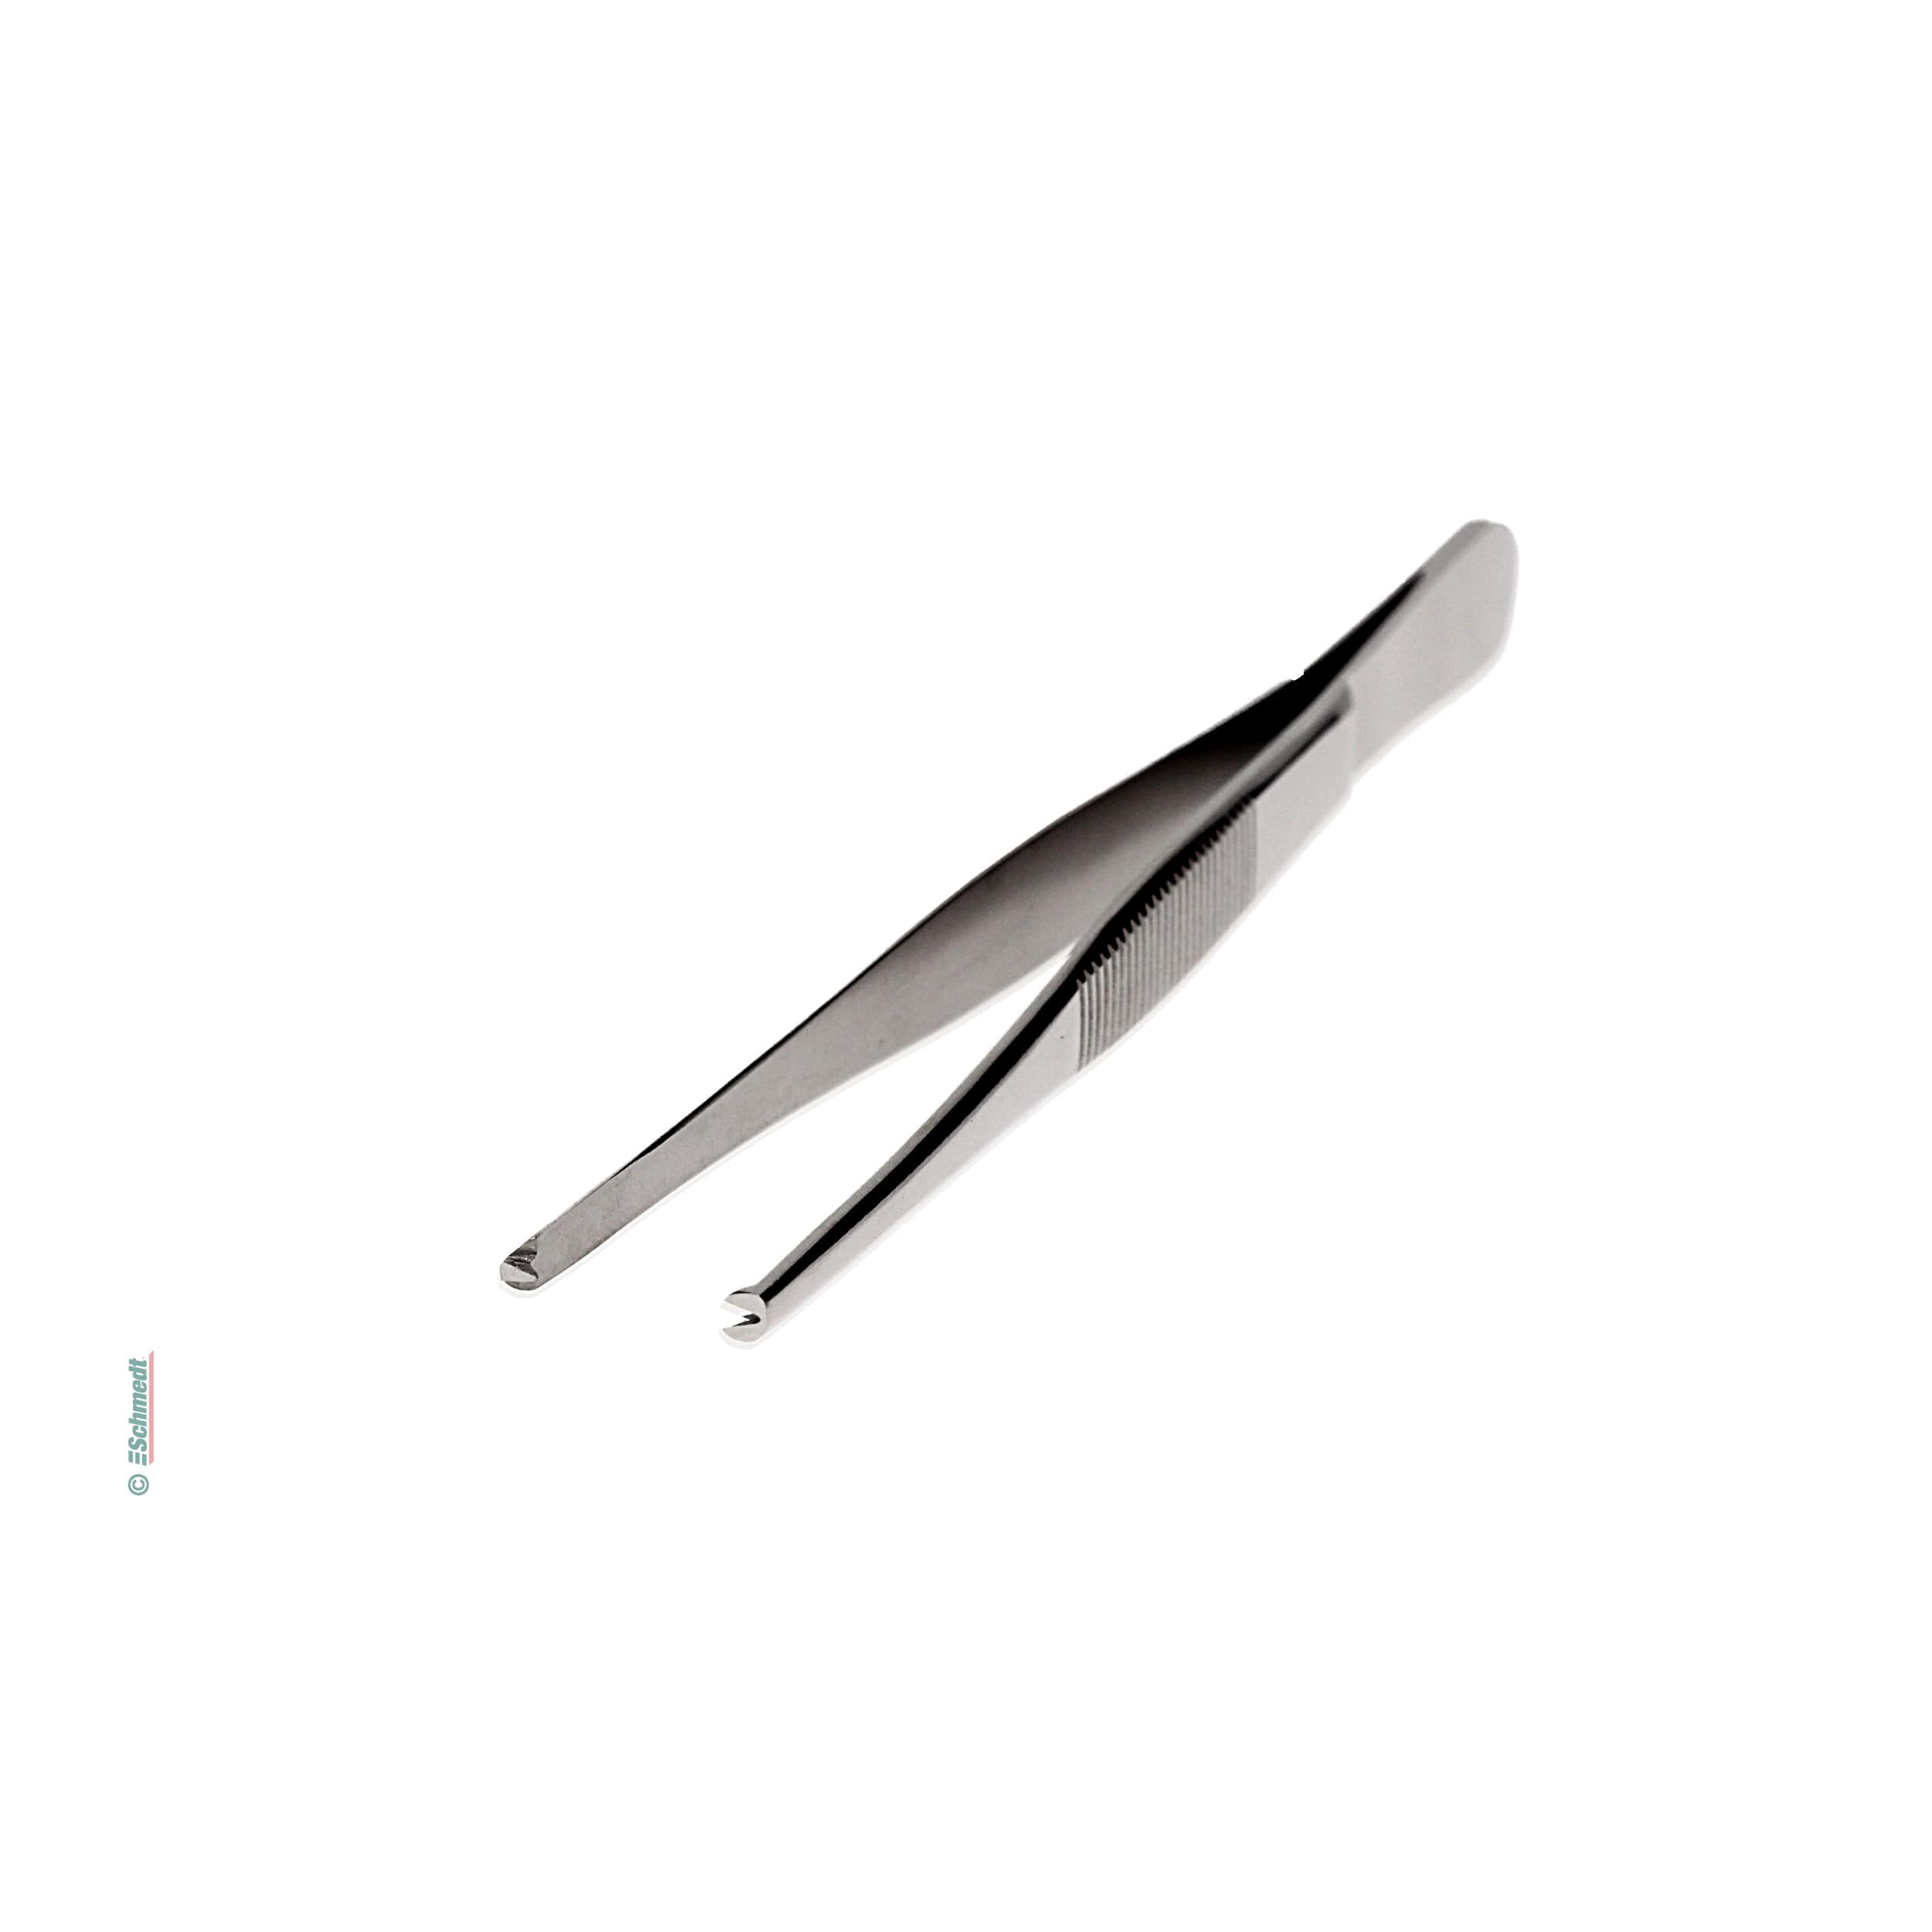 Pinzas con garfio - inoxidable (acero cromo) - Largo total: 130 mm - para suplementos, ajustes y manejo de piezas pequeñas... - imagen-1